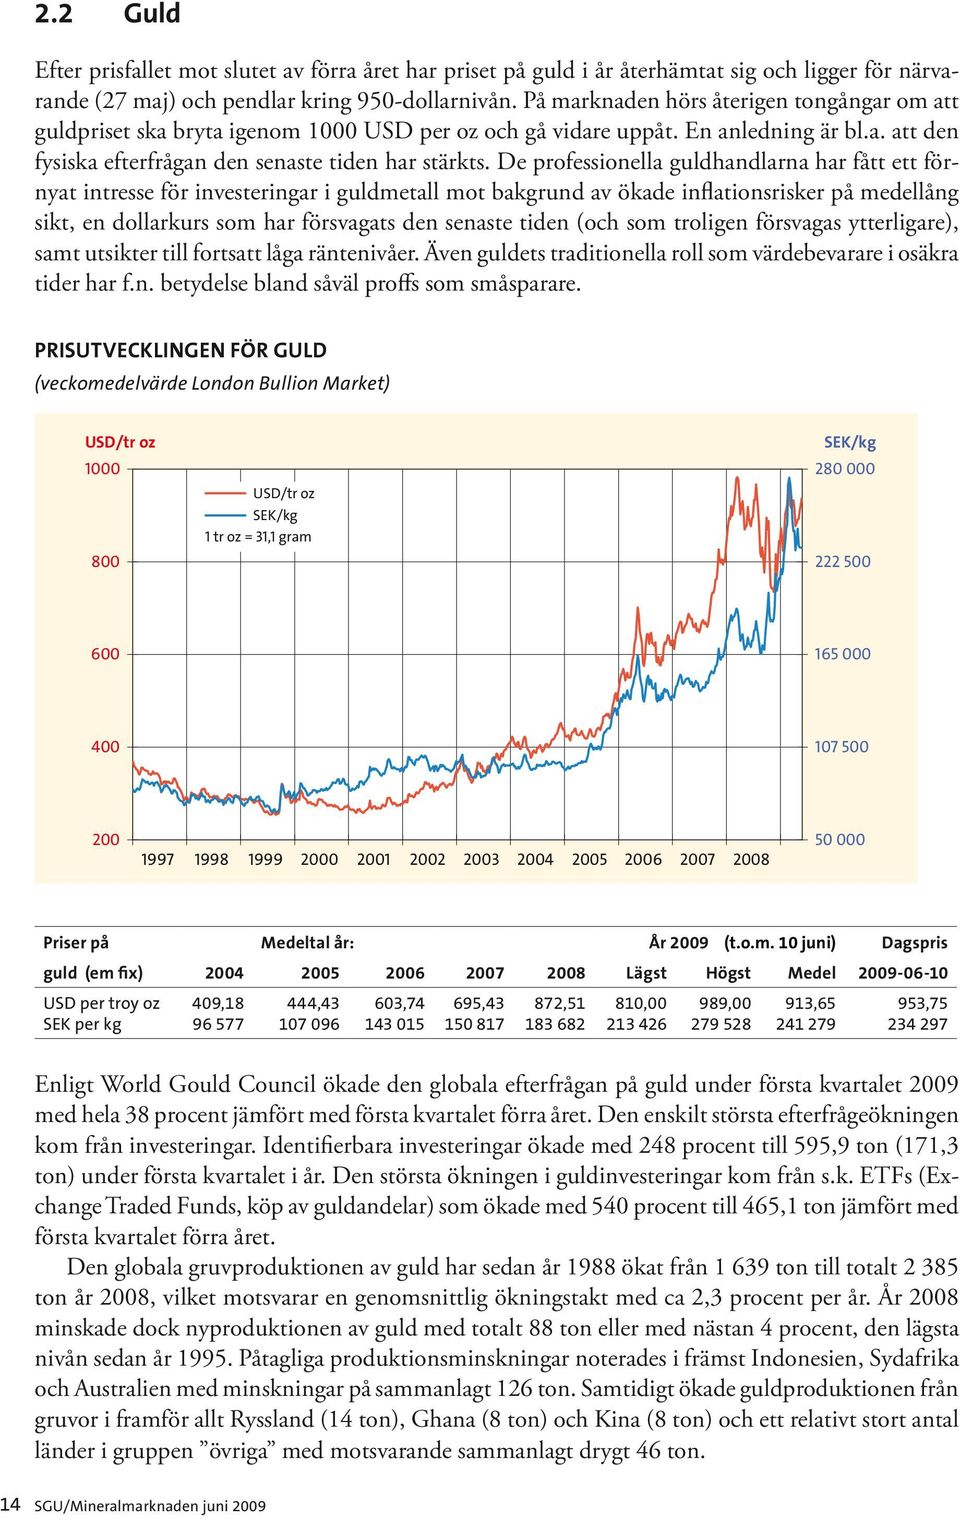 De professionella guldhandlarna har fått ett förnyat intresse för investeringar i guldmetall mot bakgrund av ökade inflationsrisker på medellång sikt, en dollarkurs som har försvagats den senaste